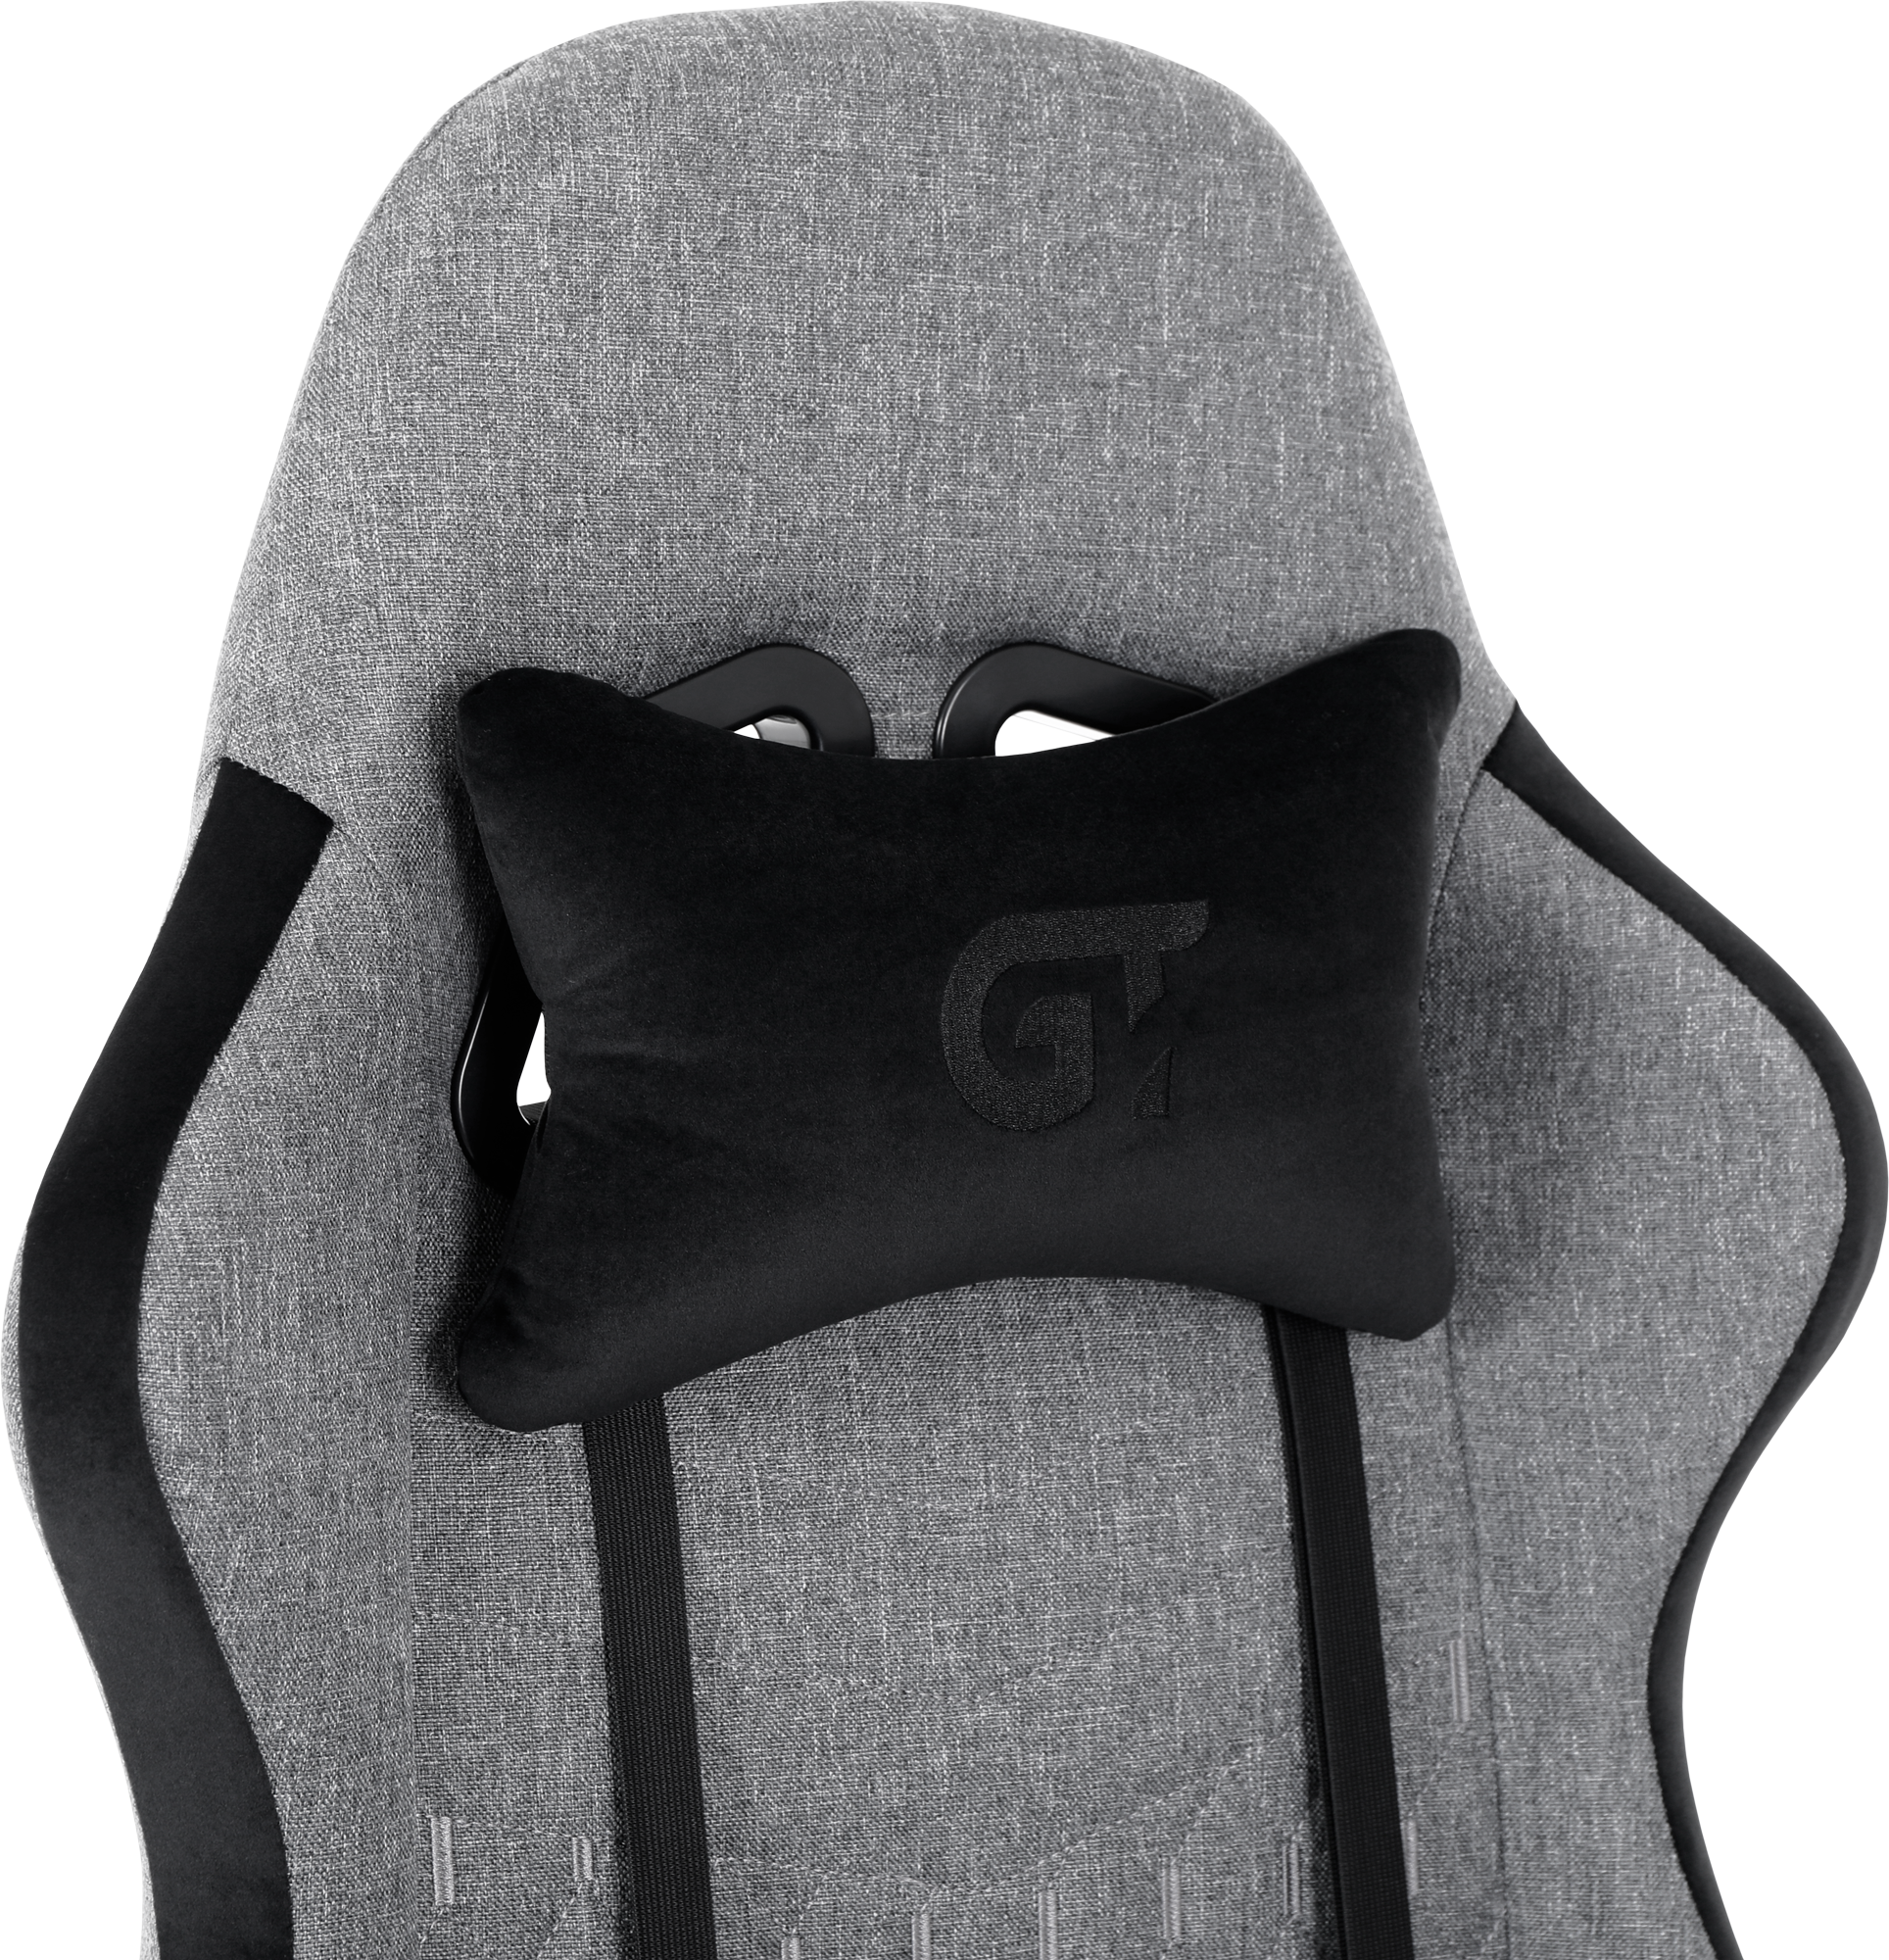 Геймерское кресло GT Racer серое с черным (X-2324 Fabric Gray/Black Suede) - фото 7